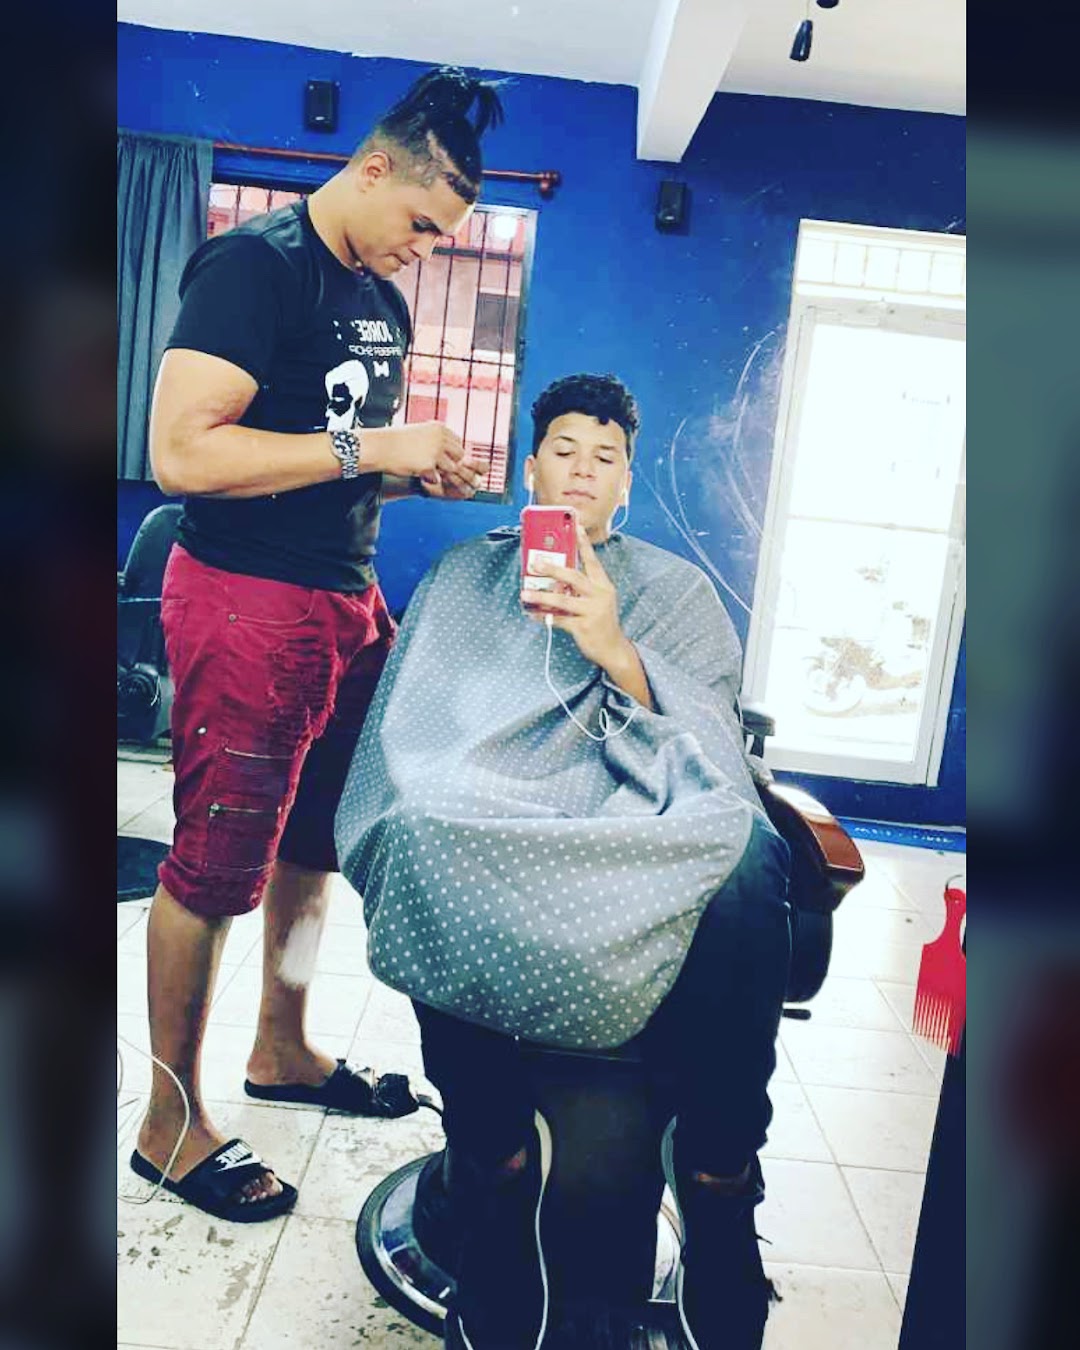 Eliezer Vargas barbershop